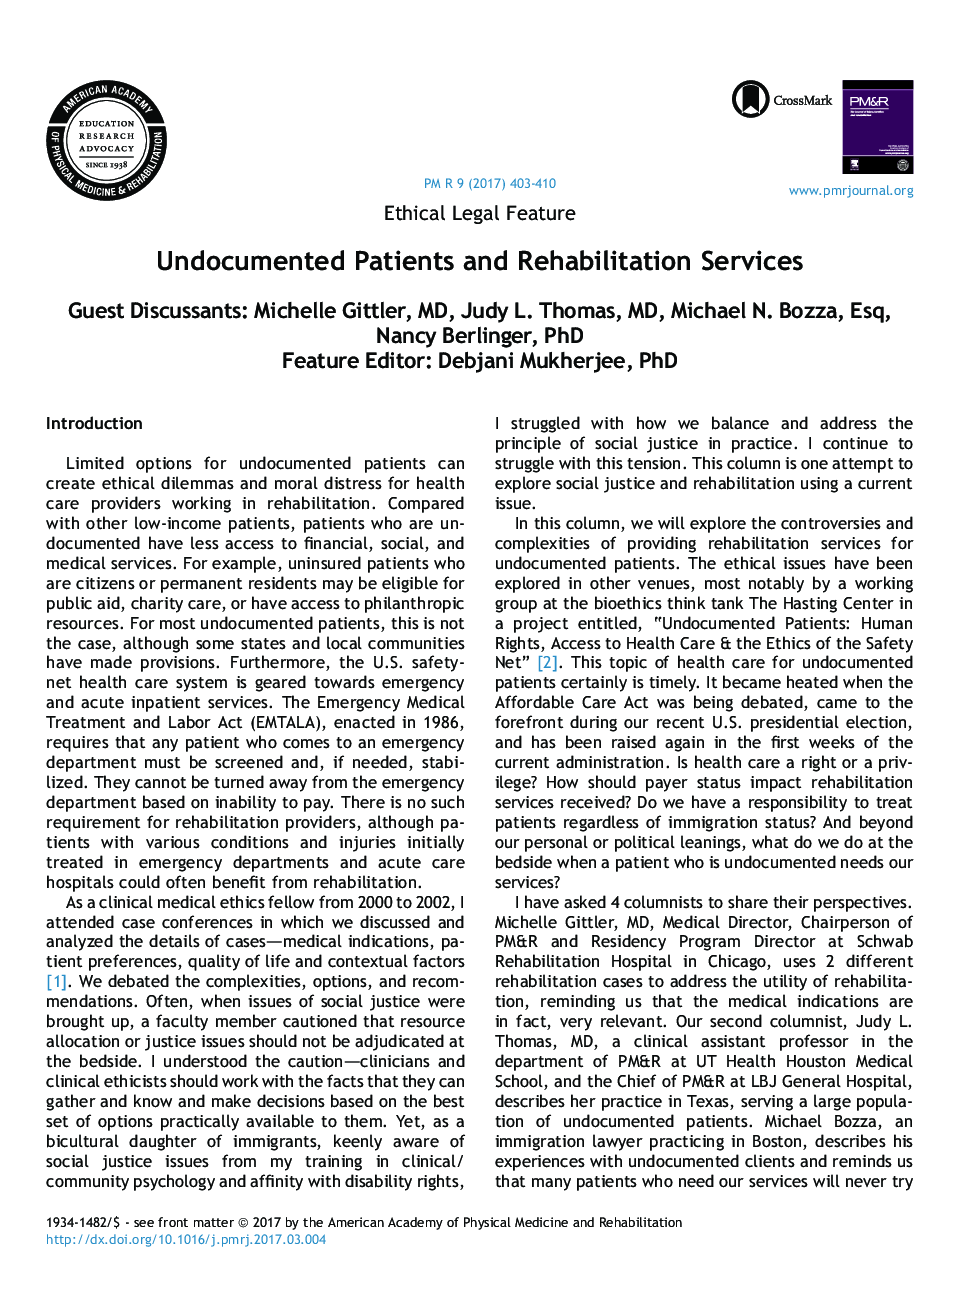 بیماران غیرقانونی و خدمات توانبخشی 